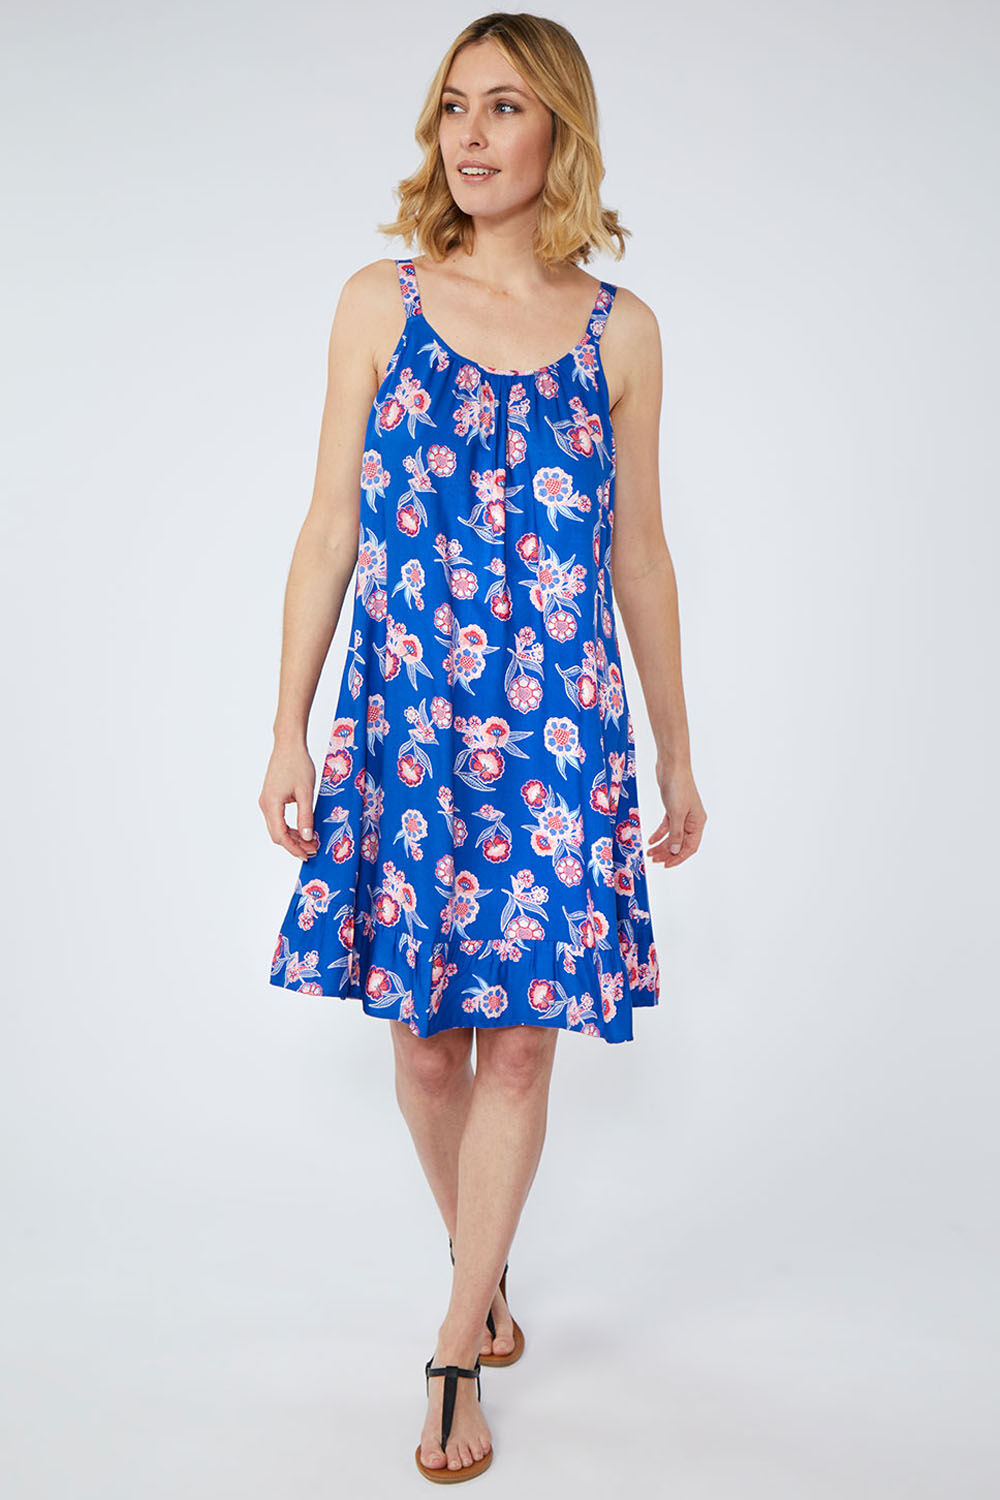 Plus Size Dresses | Floral \u0026 Summer 